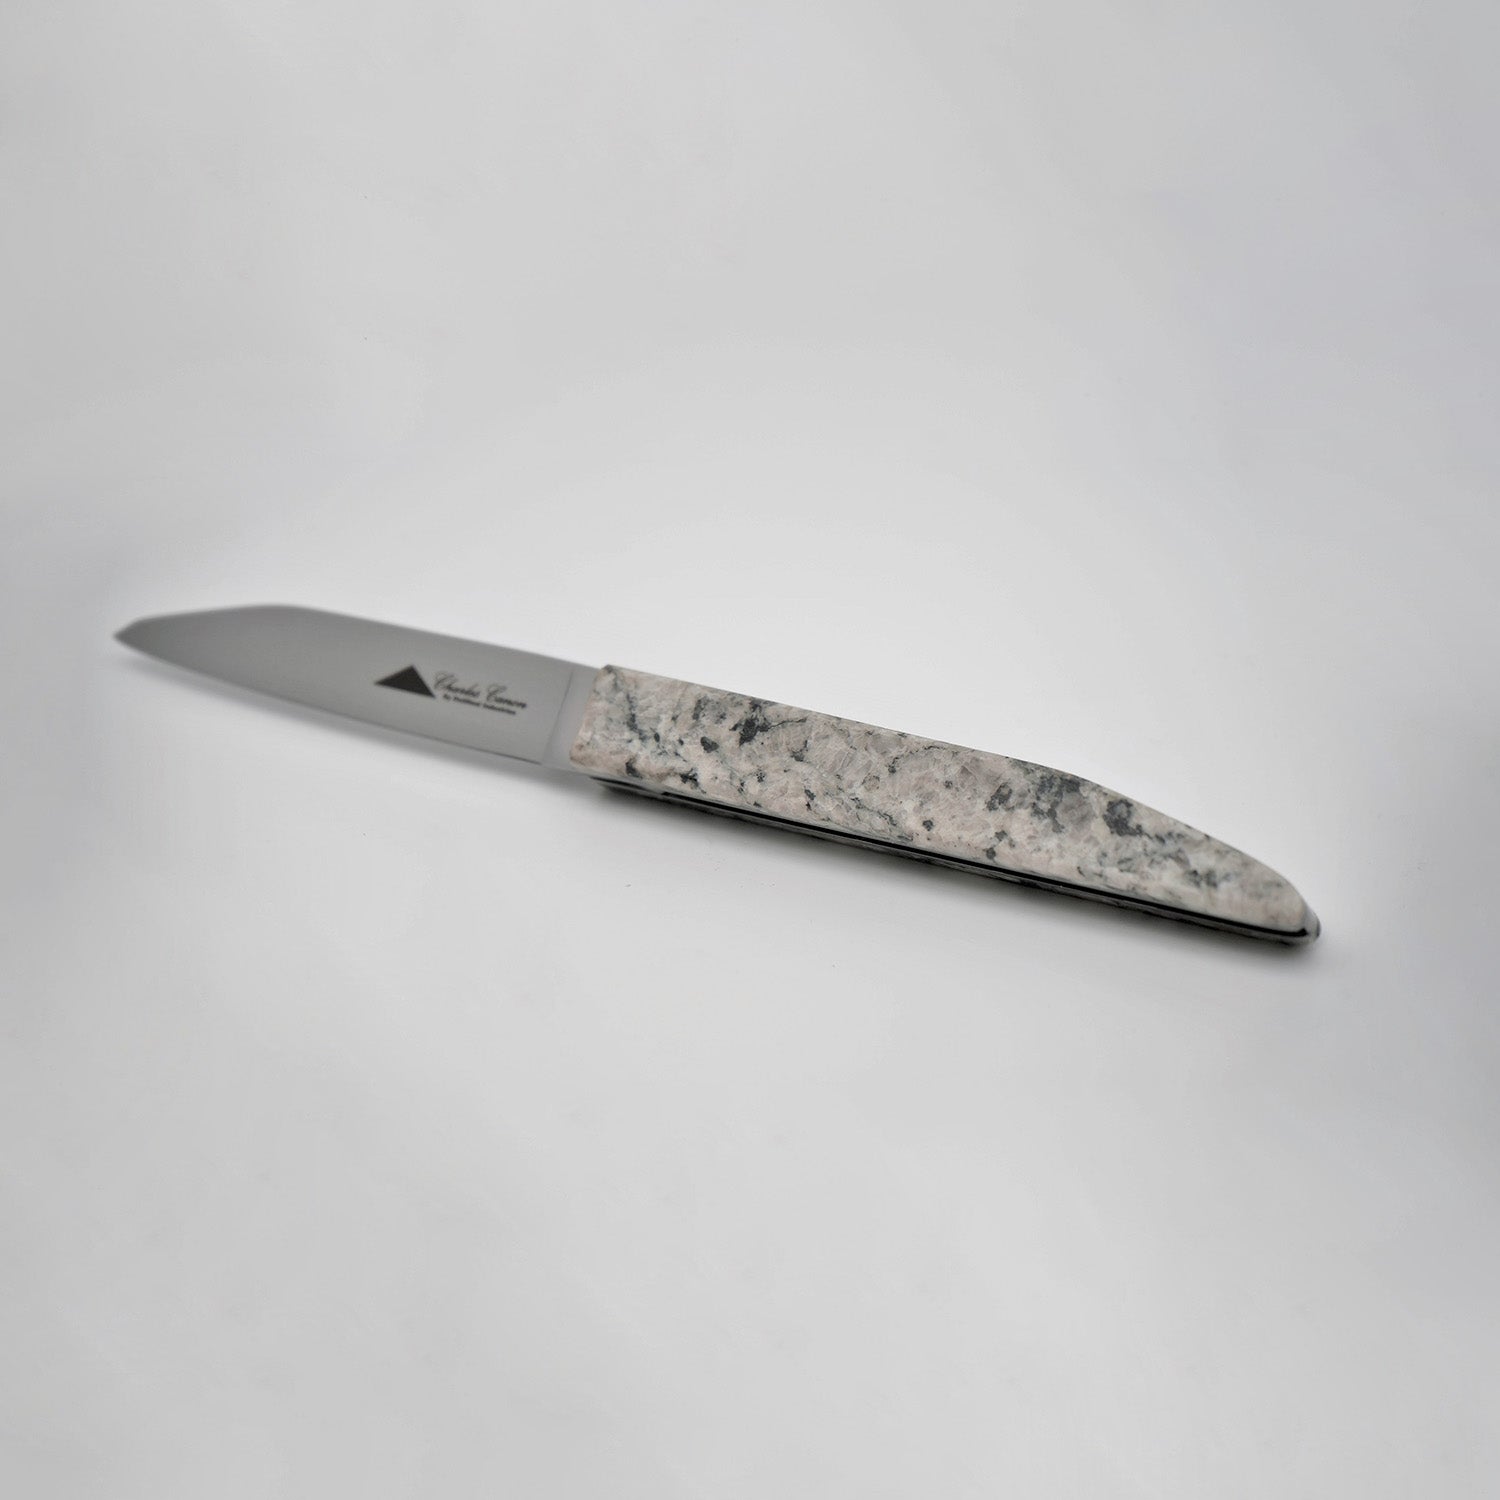 Messer mit Mont-Blanc-Granitgriff 